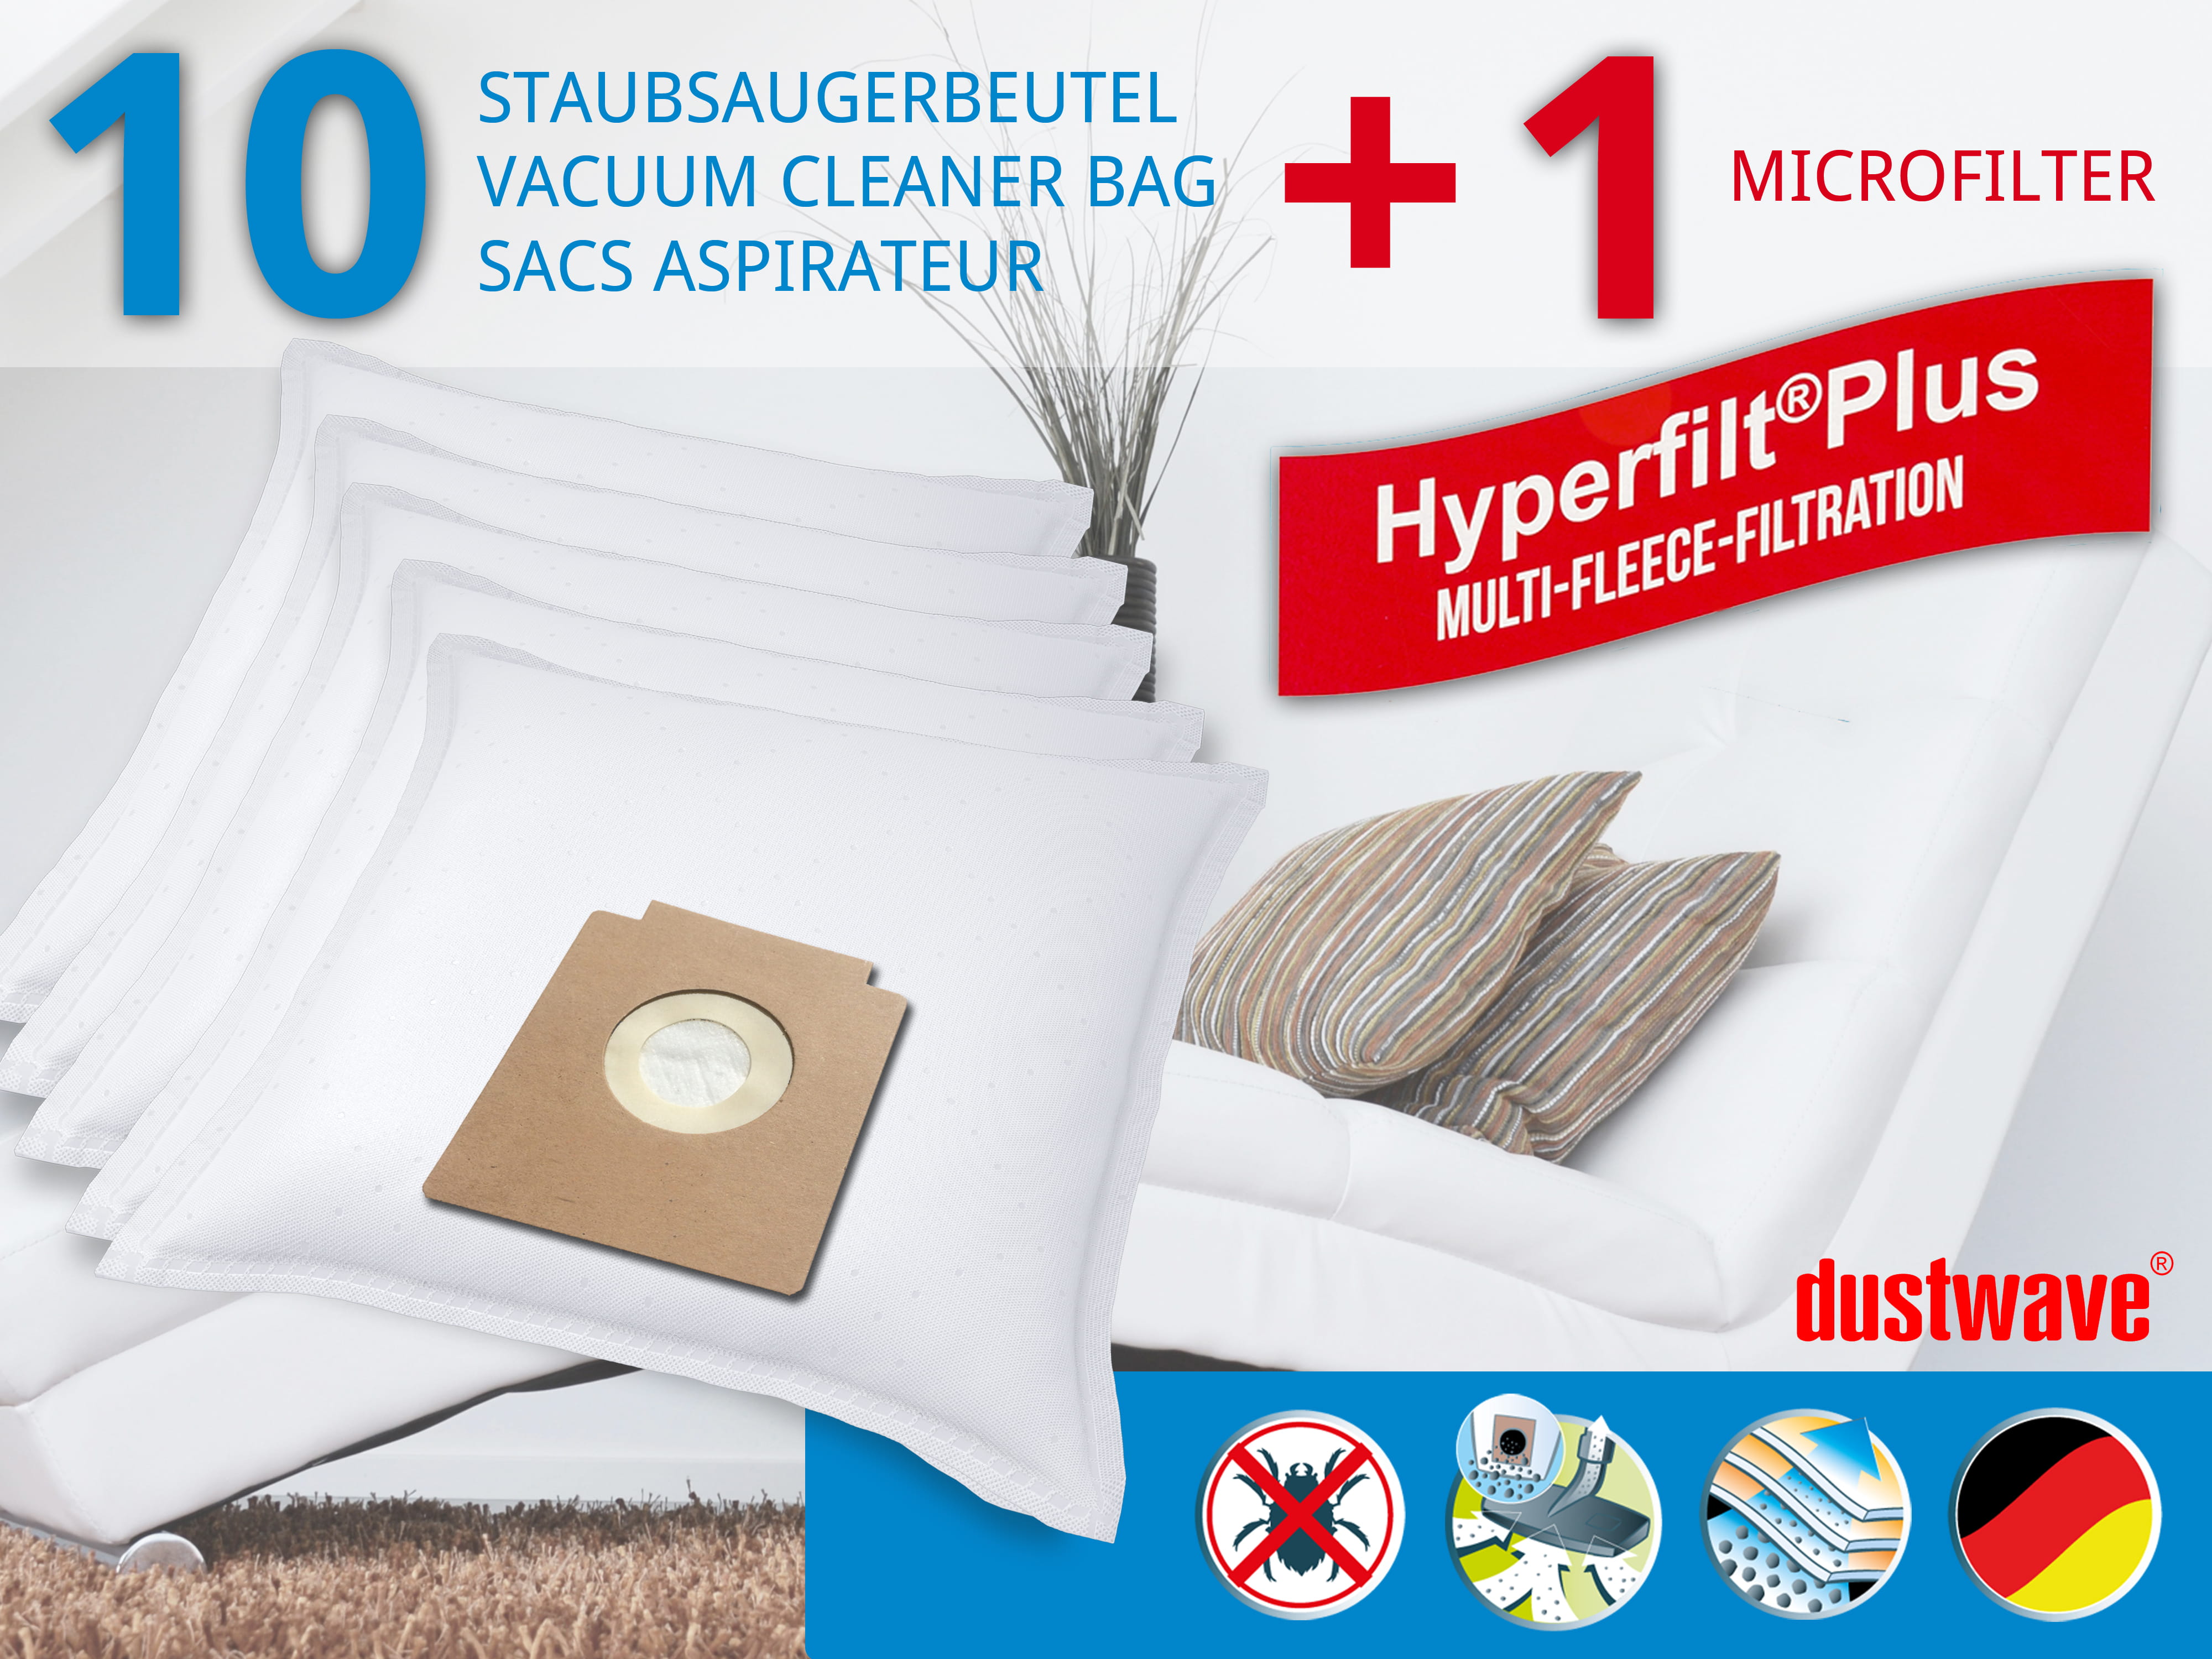 Dustwave® 10 Staubsaugerbeutel für Blue Sky BVC 3307 / BVC3307 - hocheffizient, mehrlagiges Mikrovlies mit Hygieneverschluss - Made in Germany